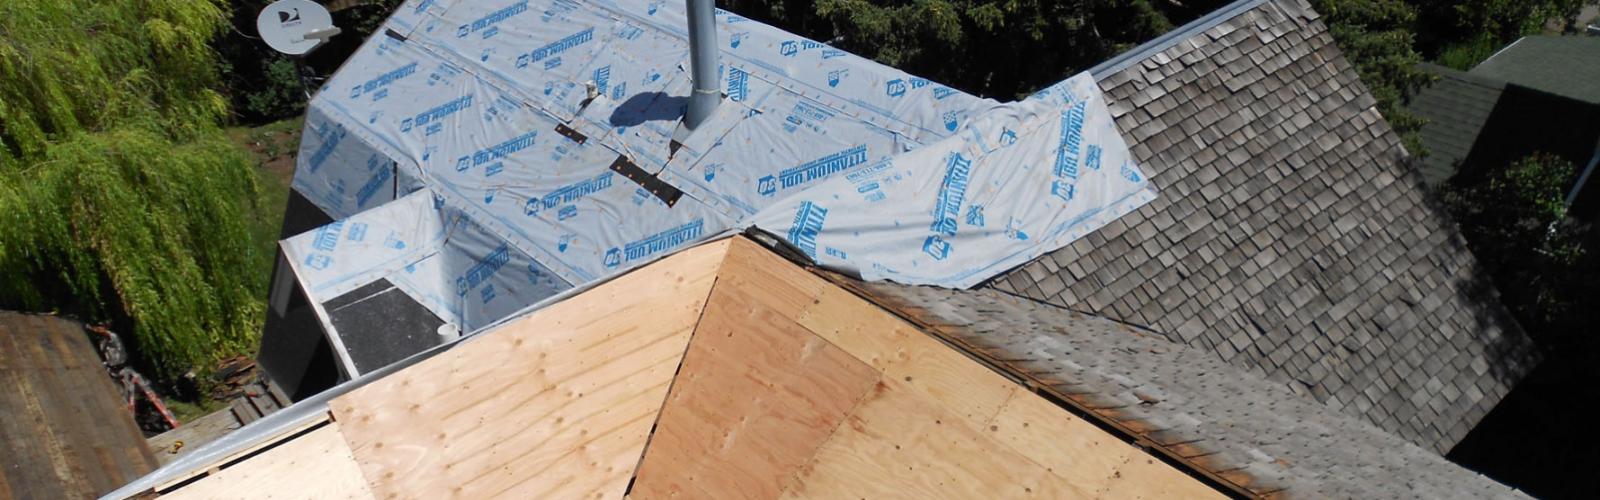 Bozeman Roofing Hail damage Harmon Enterprises construction